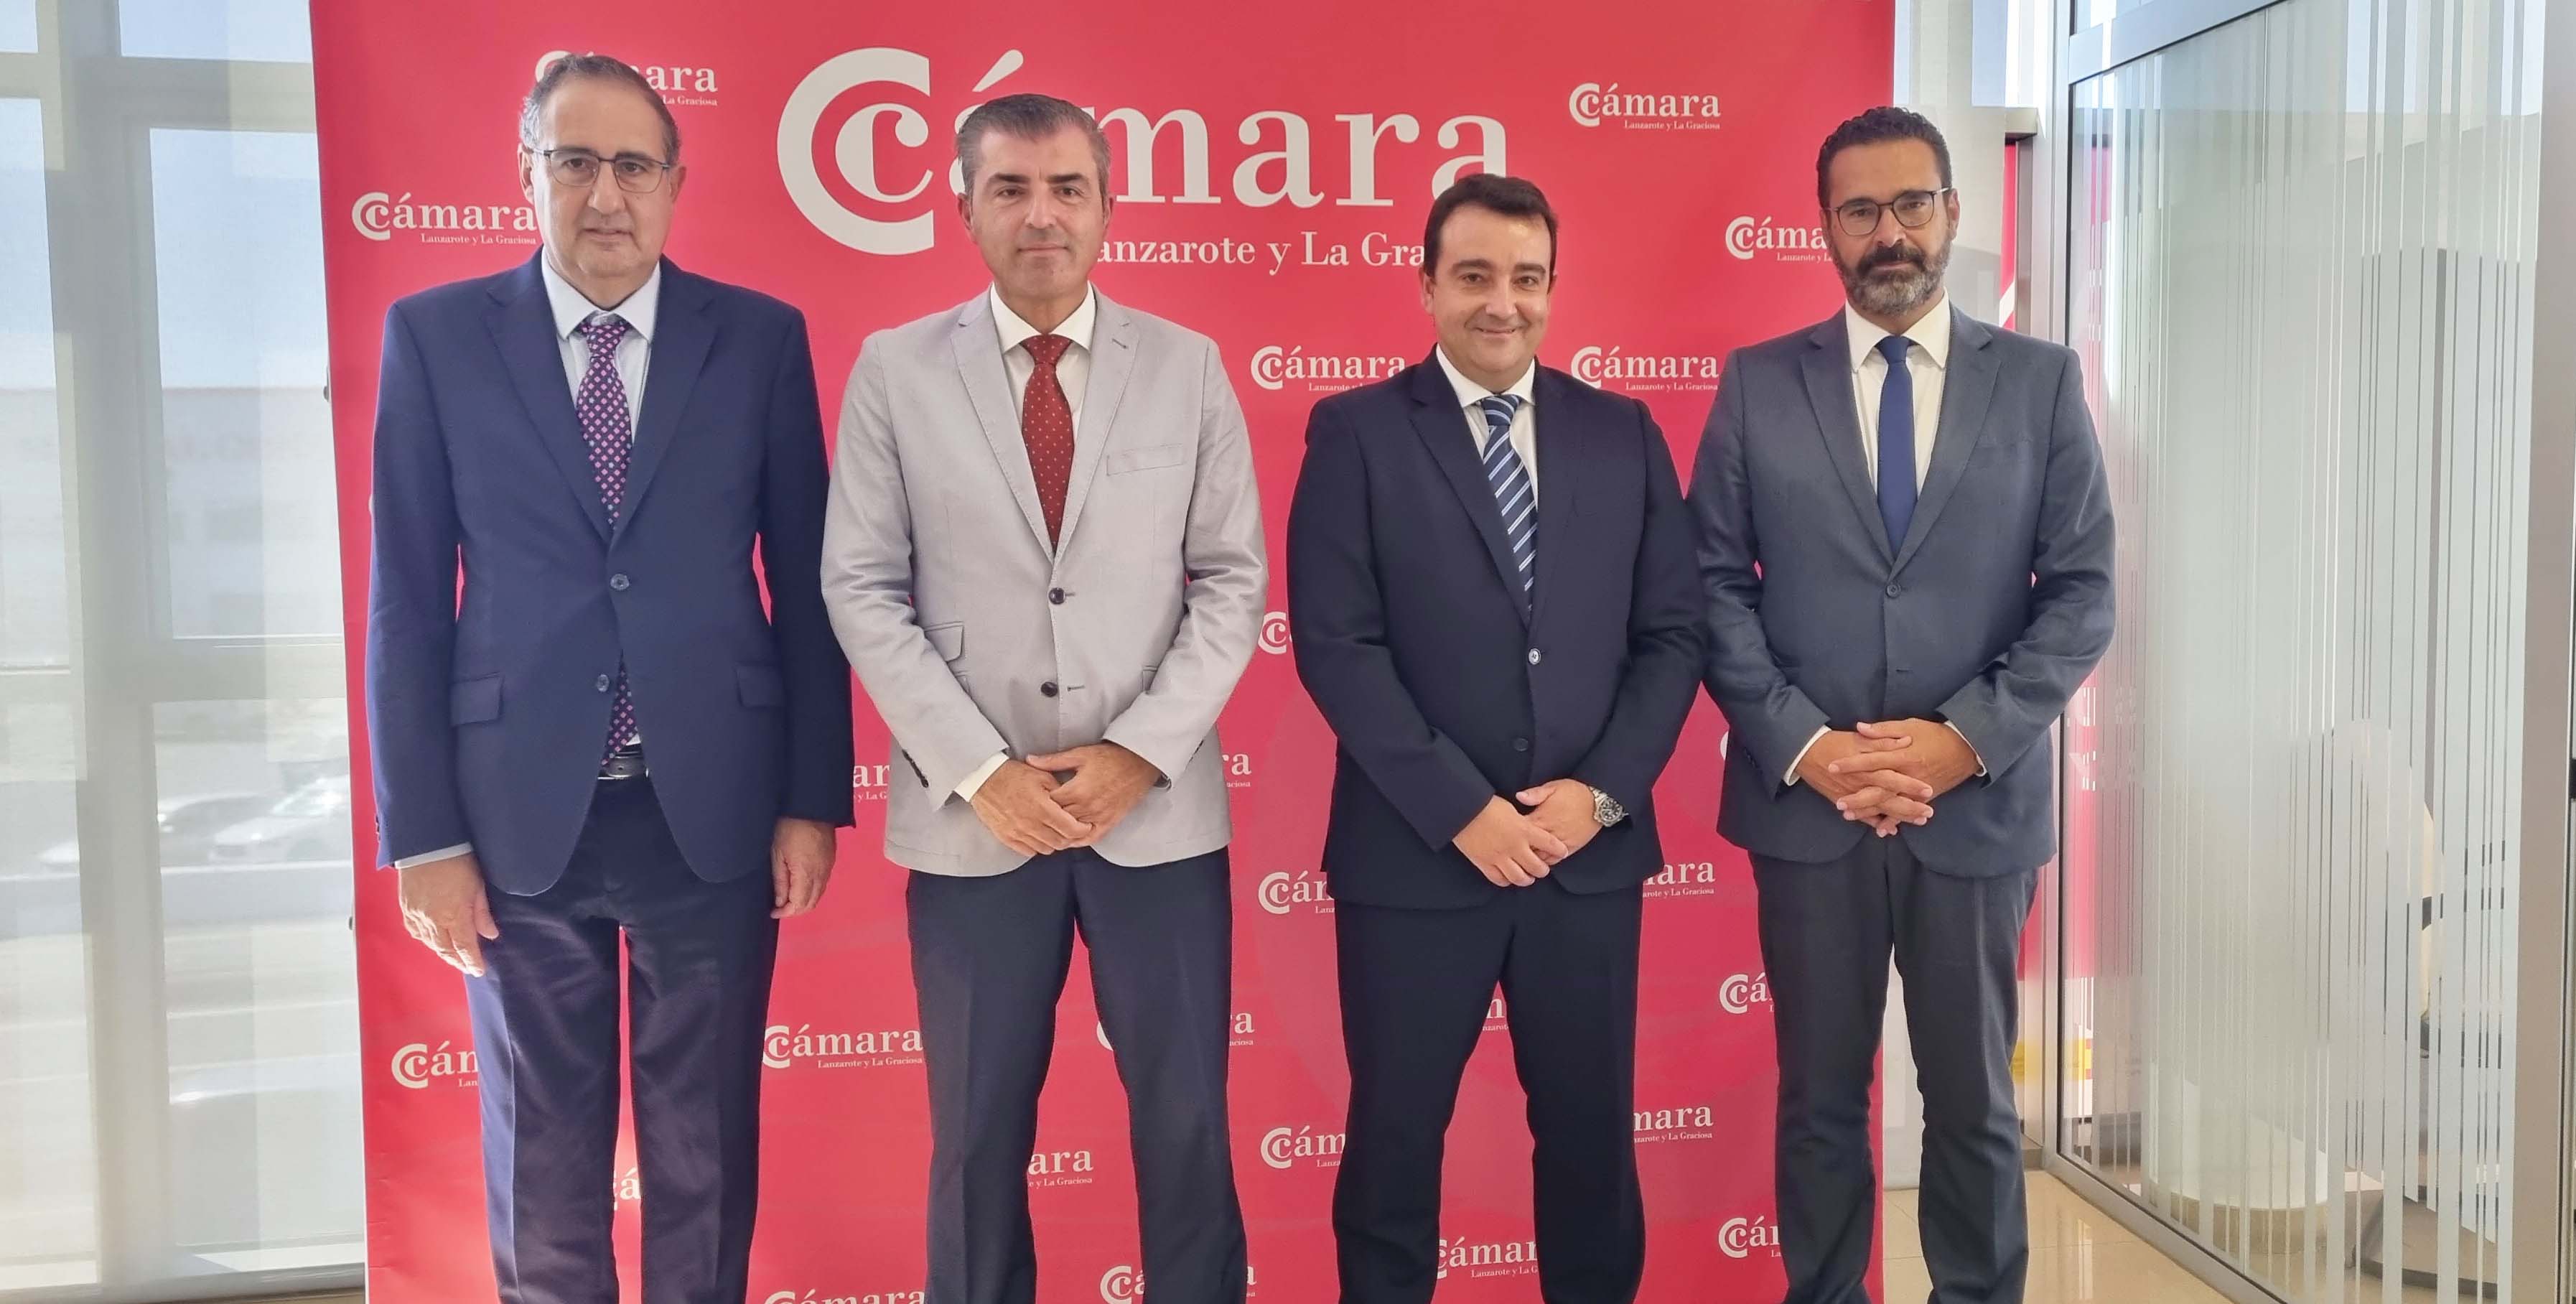 El vicepresidente del Gobierno de Canarias, Manuel Domínguez, se reúne con el presidente de la Cámara de Comercio de Lanzarote y La Graciosa, José Valle, para atajar "